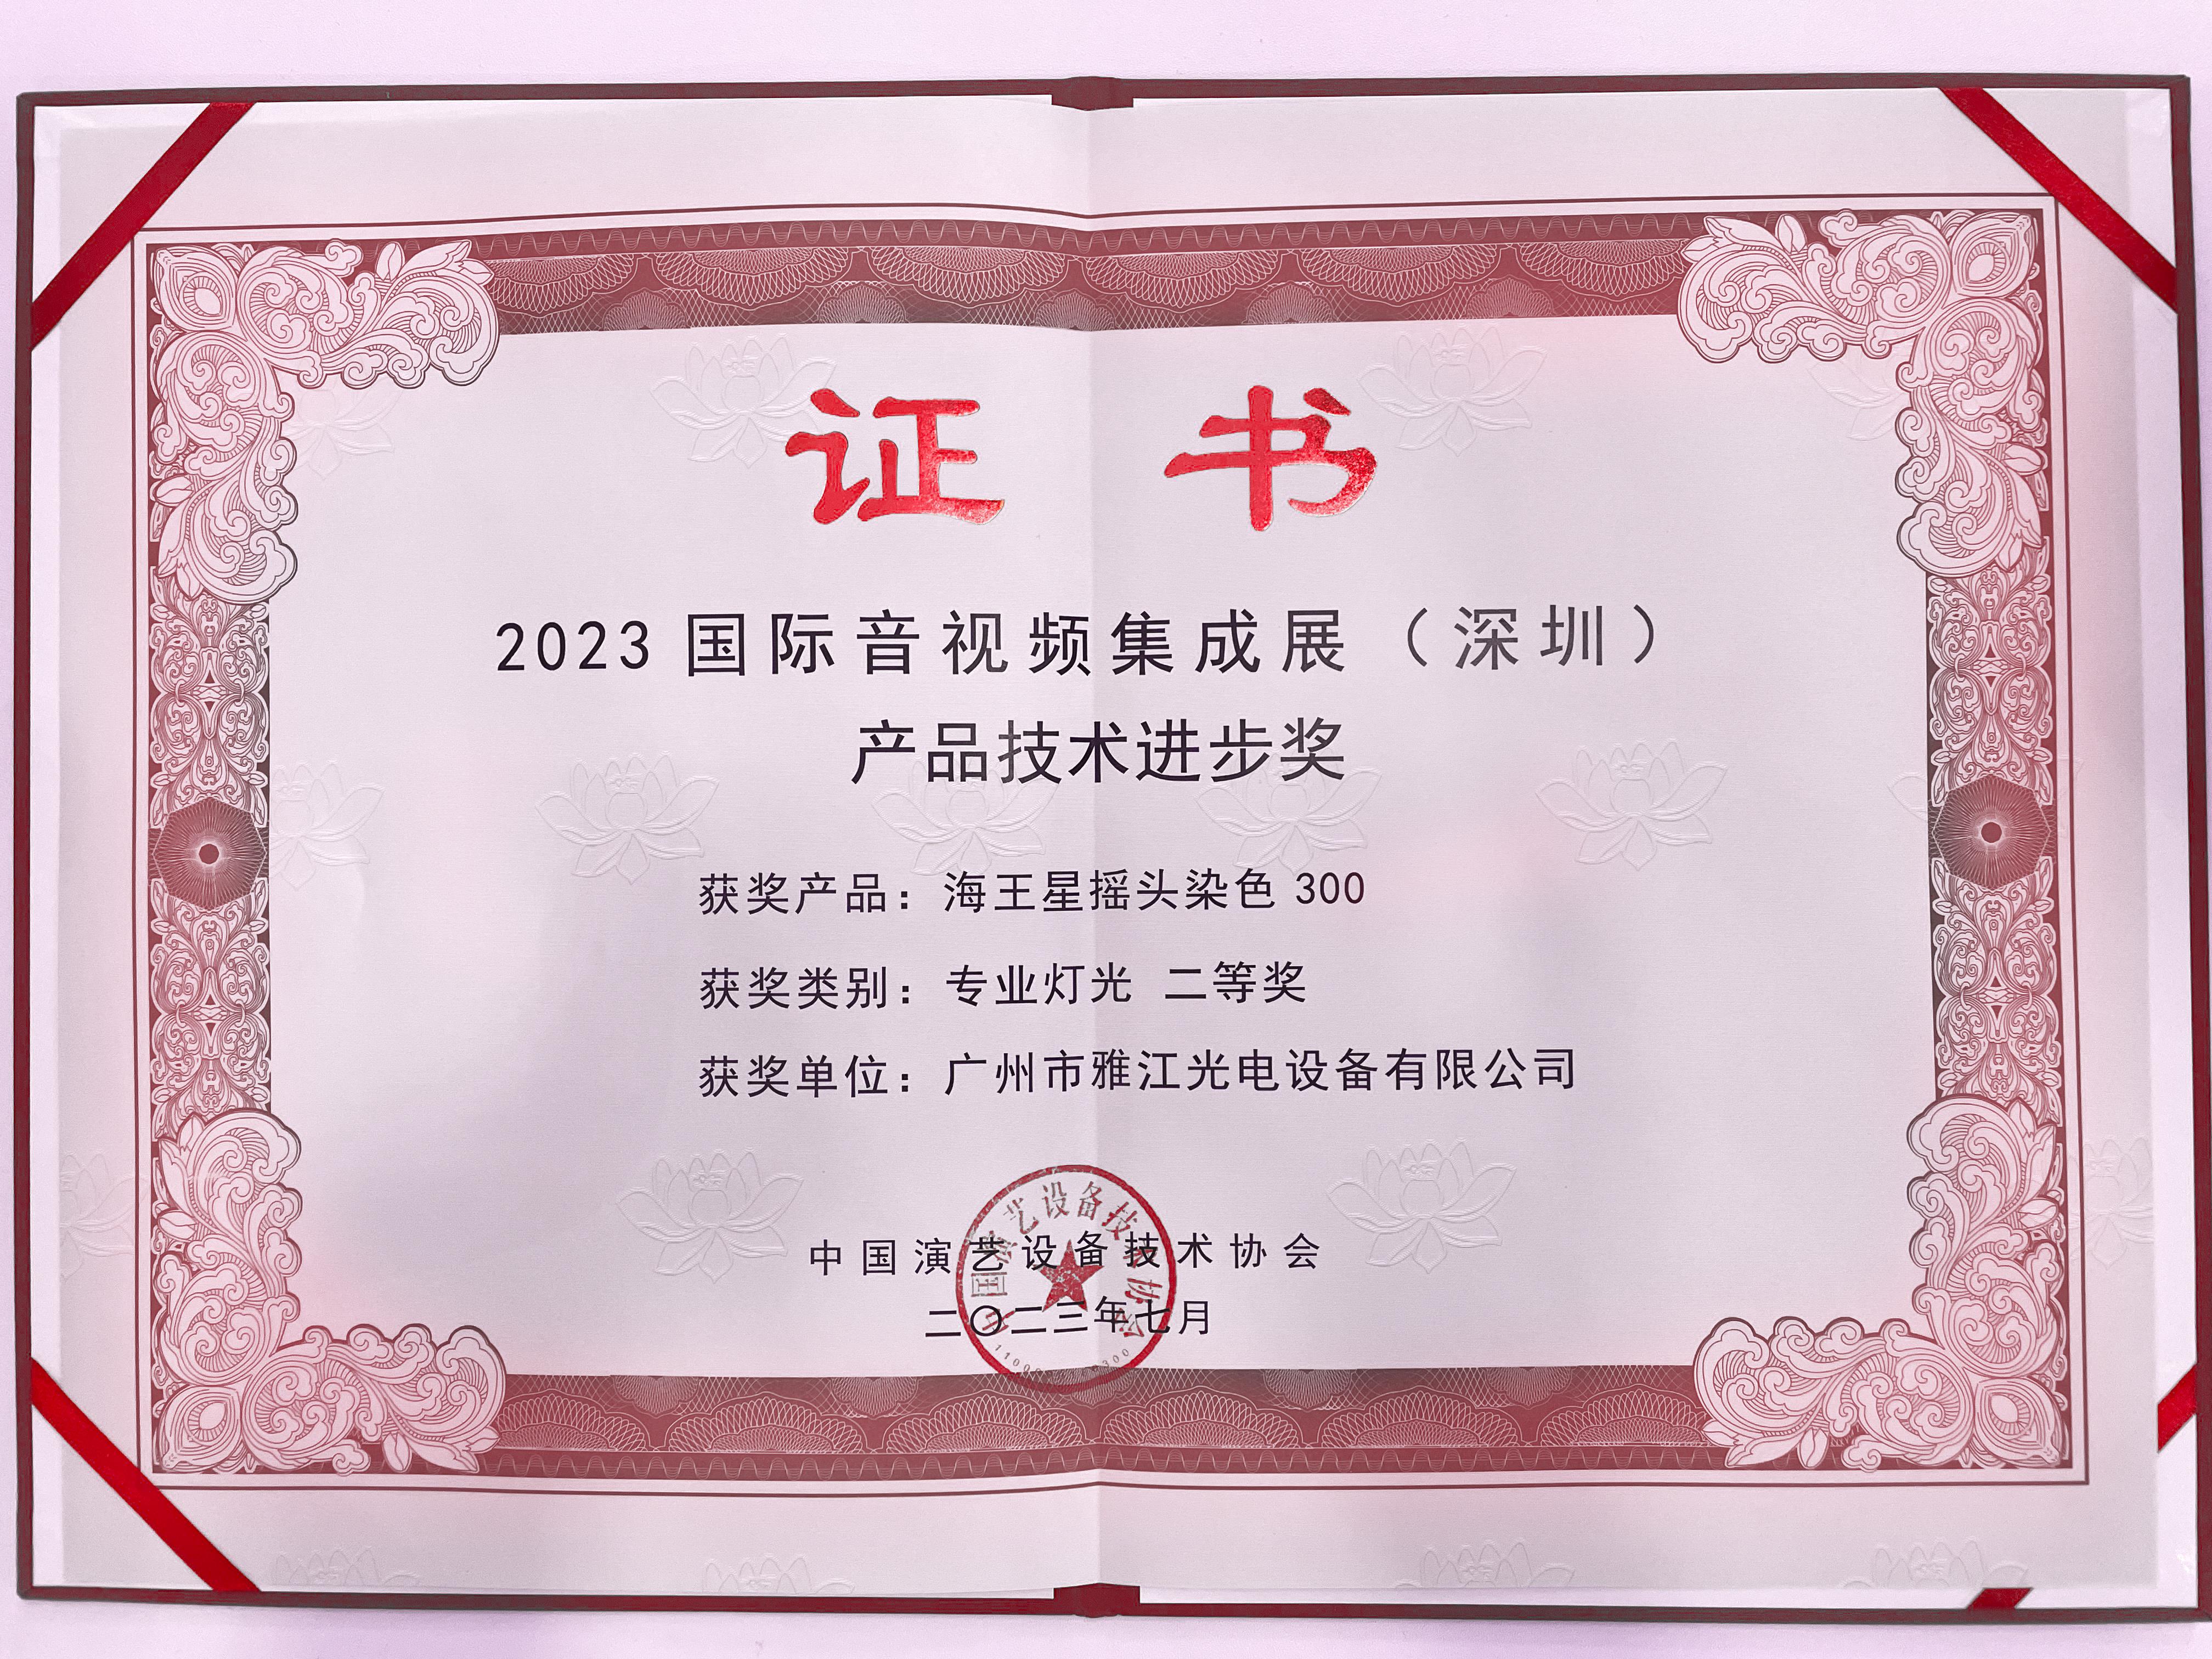 2023-2023国际音视频集成展（深圳）海王摇头染色300产品技术进步奖